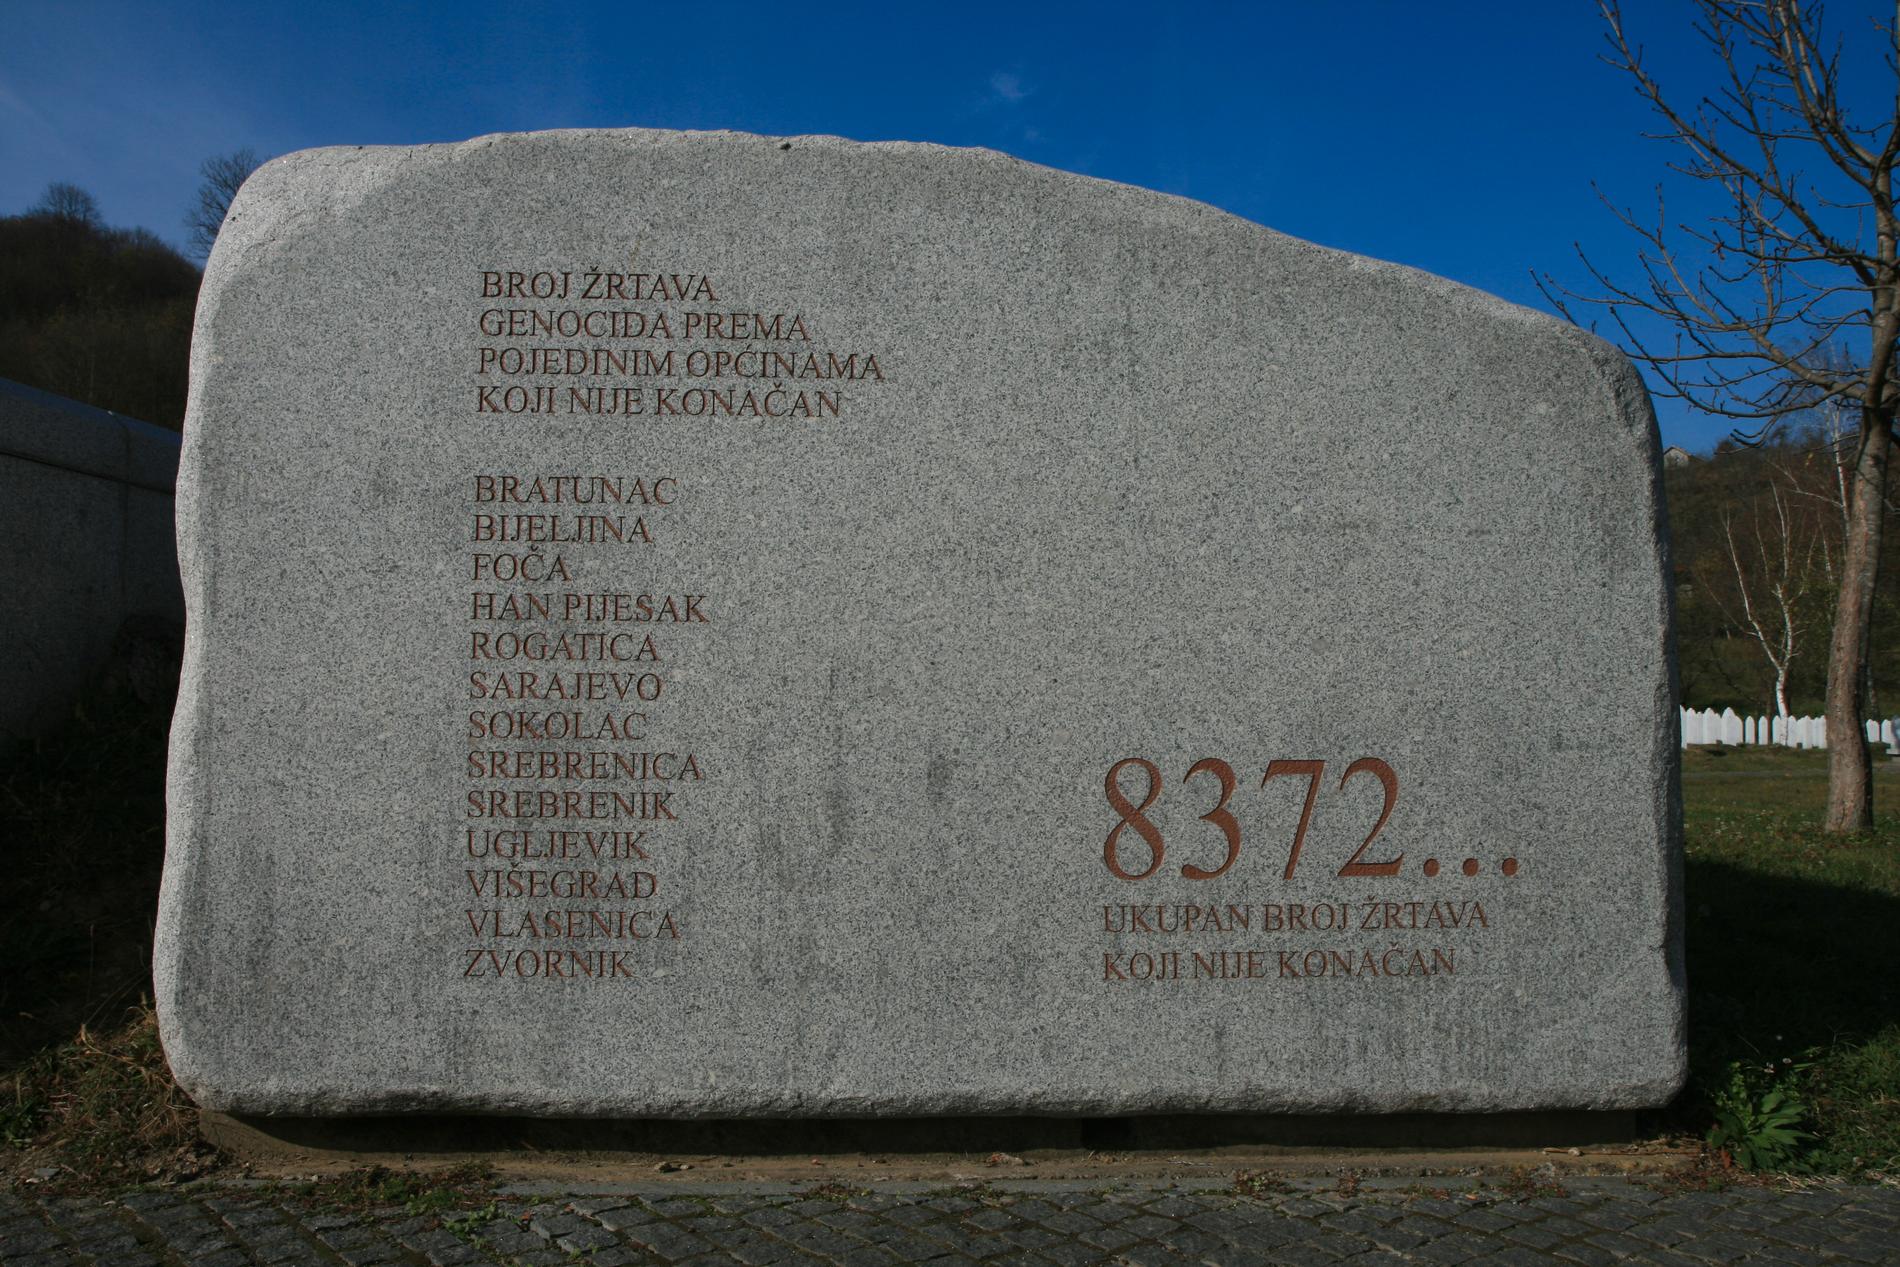 8372 är den officiella siffran på de som mördades i Srebrenica. Men varje år hittas nya gravar.